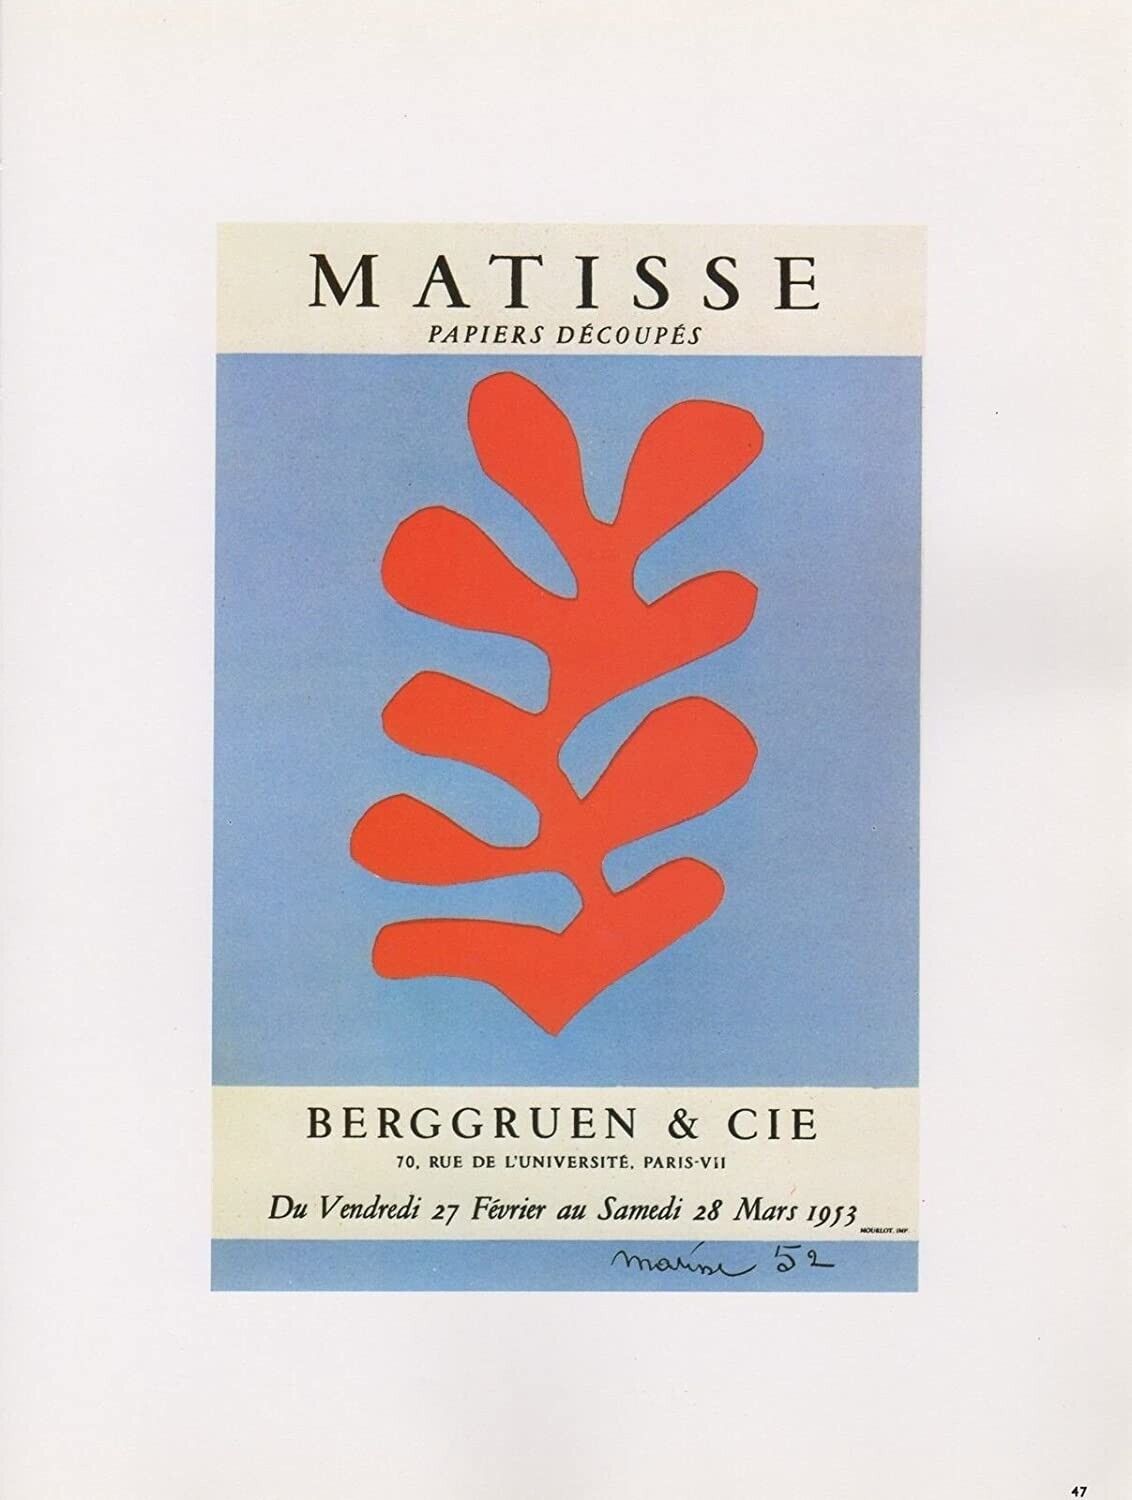 Matisse Lithograph 47 Papiers decoupes 1959 Mourlot